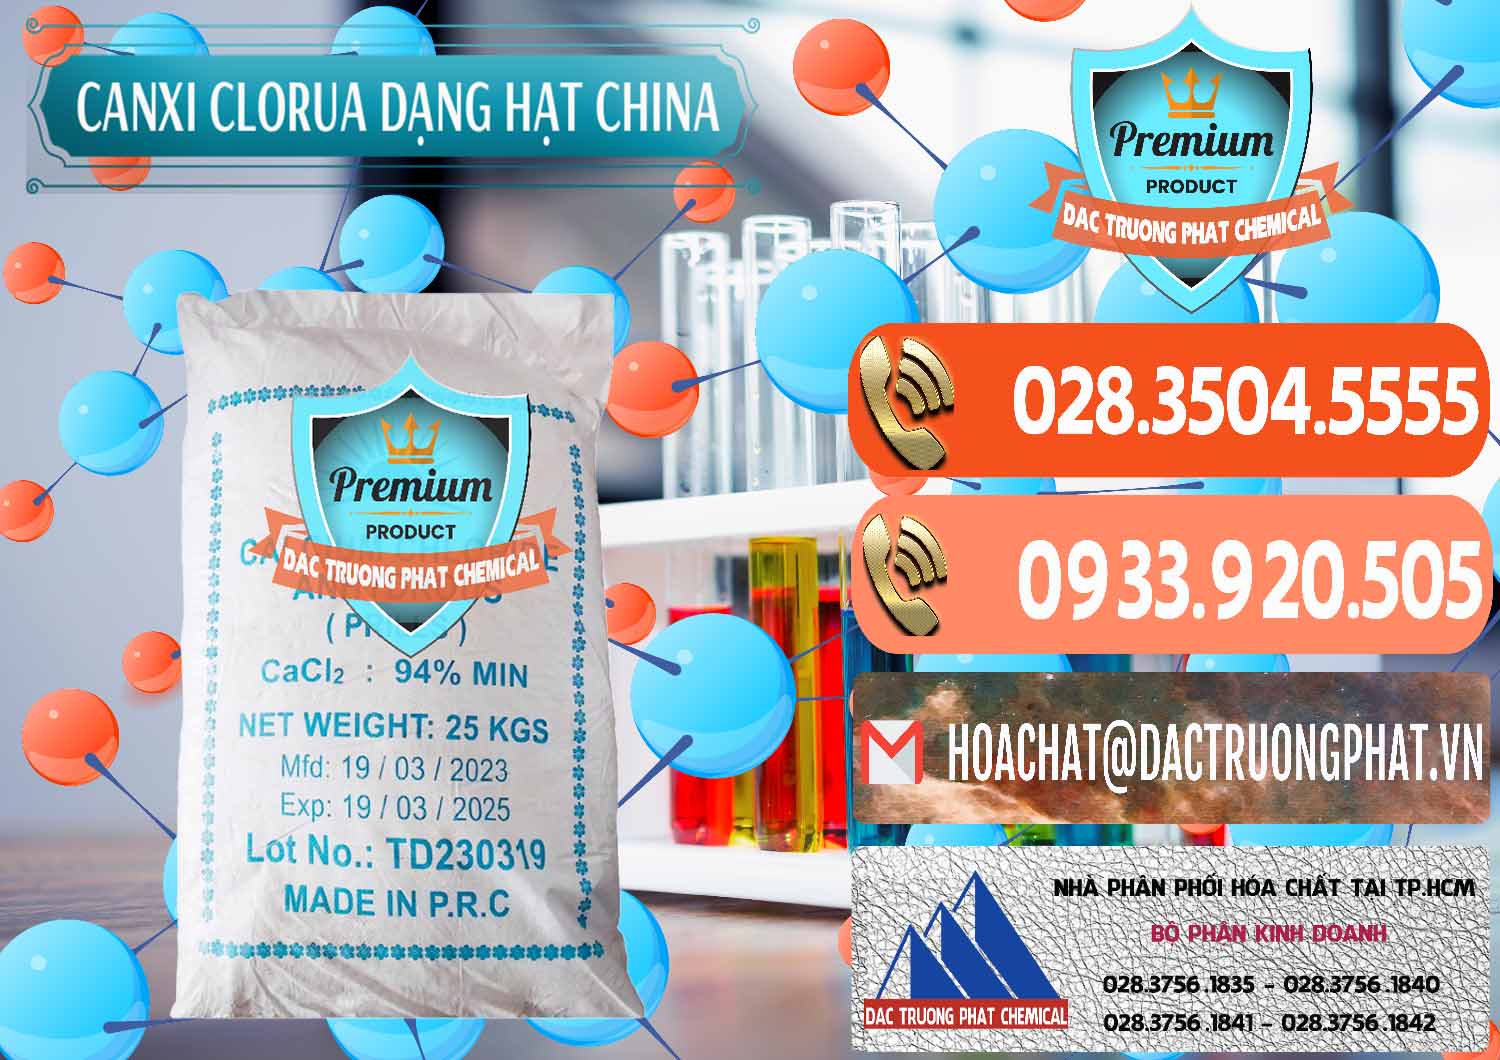 Cty kinh doanh & bán CaCl2 – Canxi Clorua 94% Dạng Hạt Trung Quốc China - 0373 - Nhà cung cấp - phân phối hóa chất tại TP.HCM - hoachatmientay.com